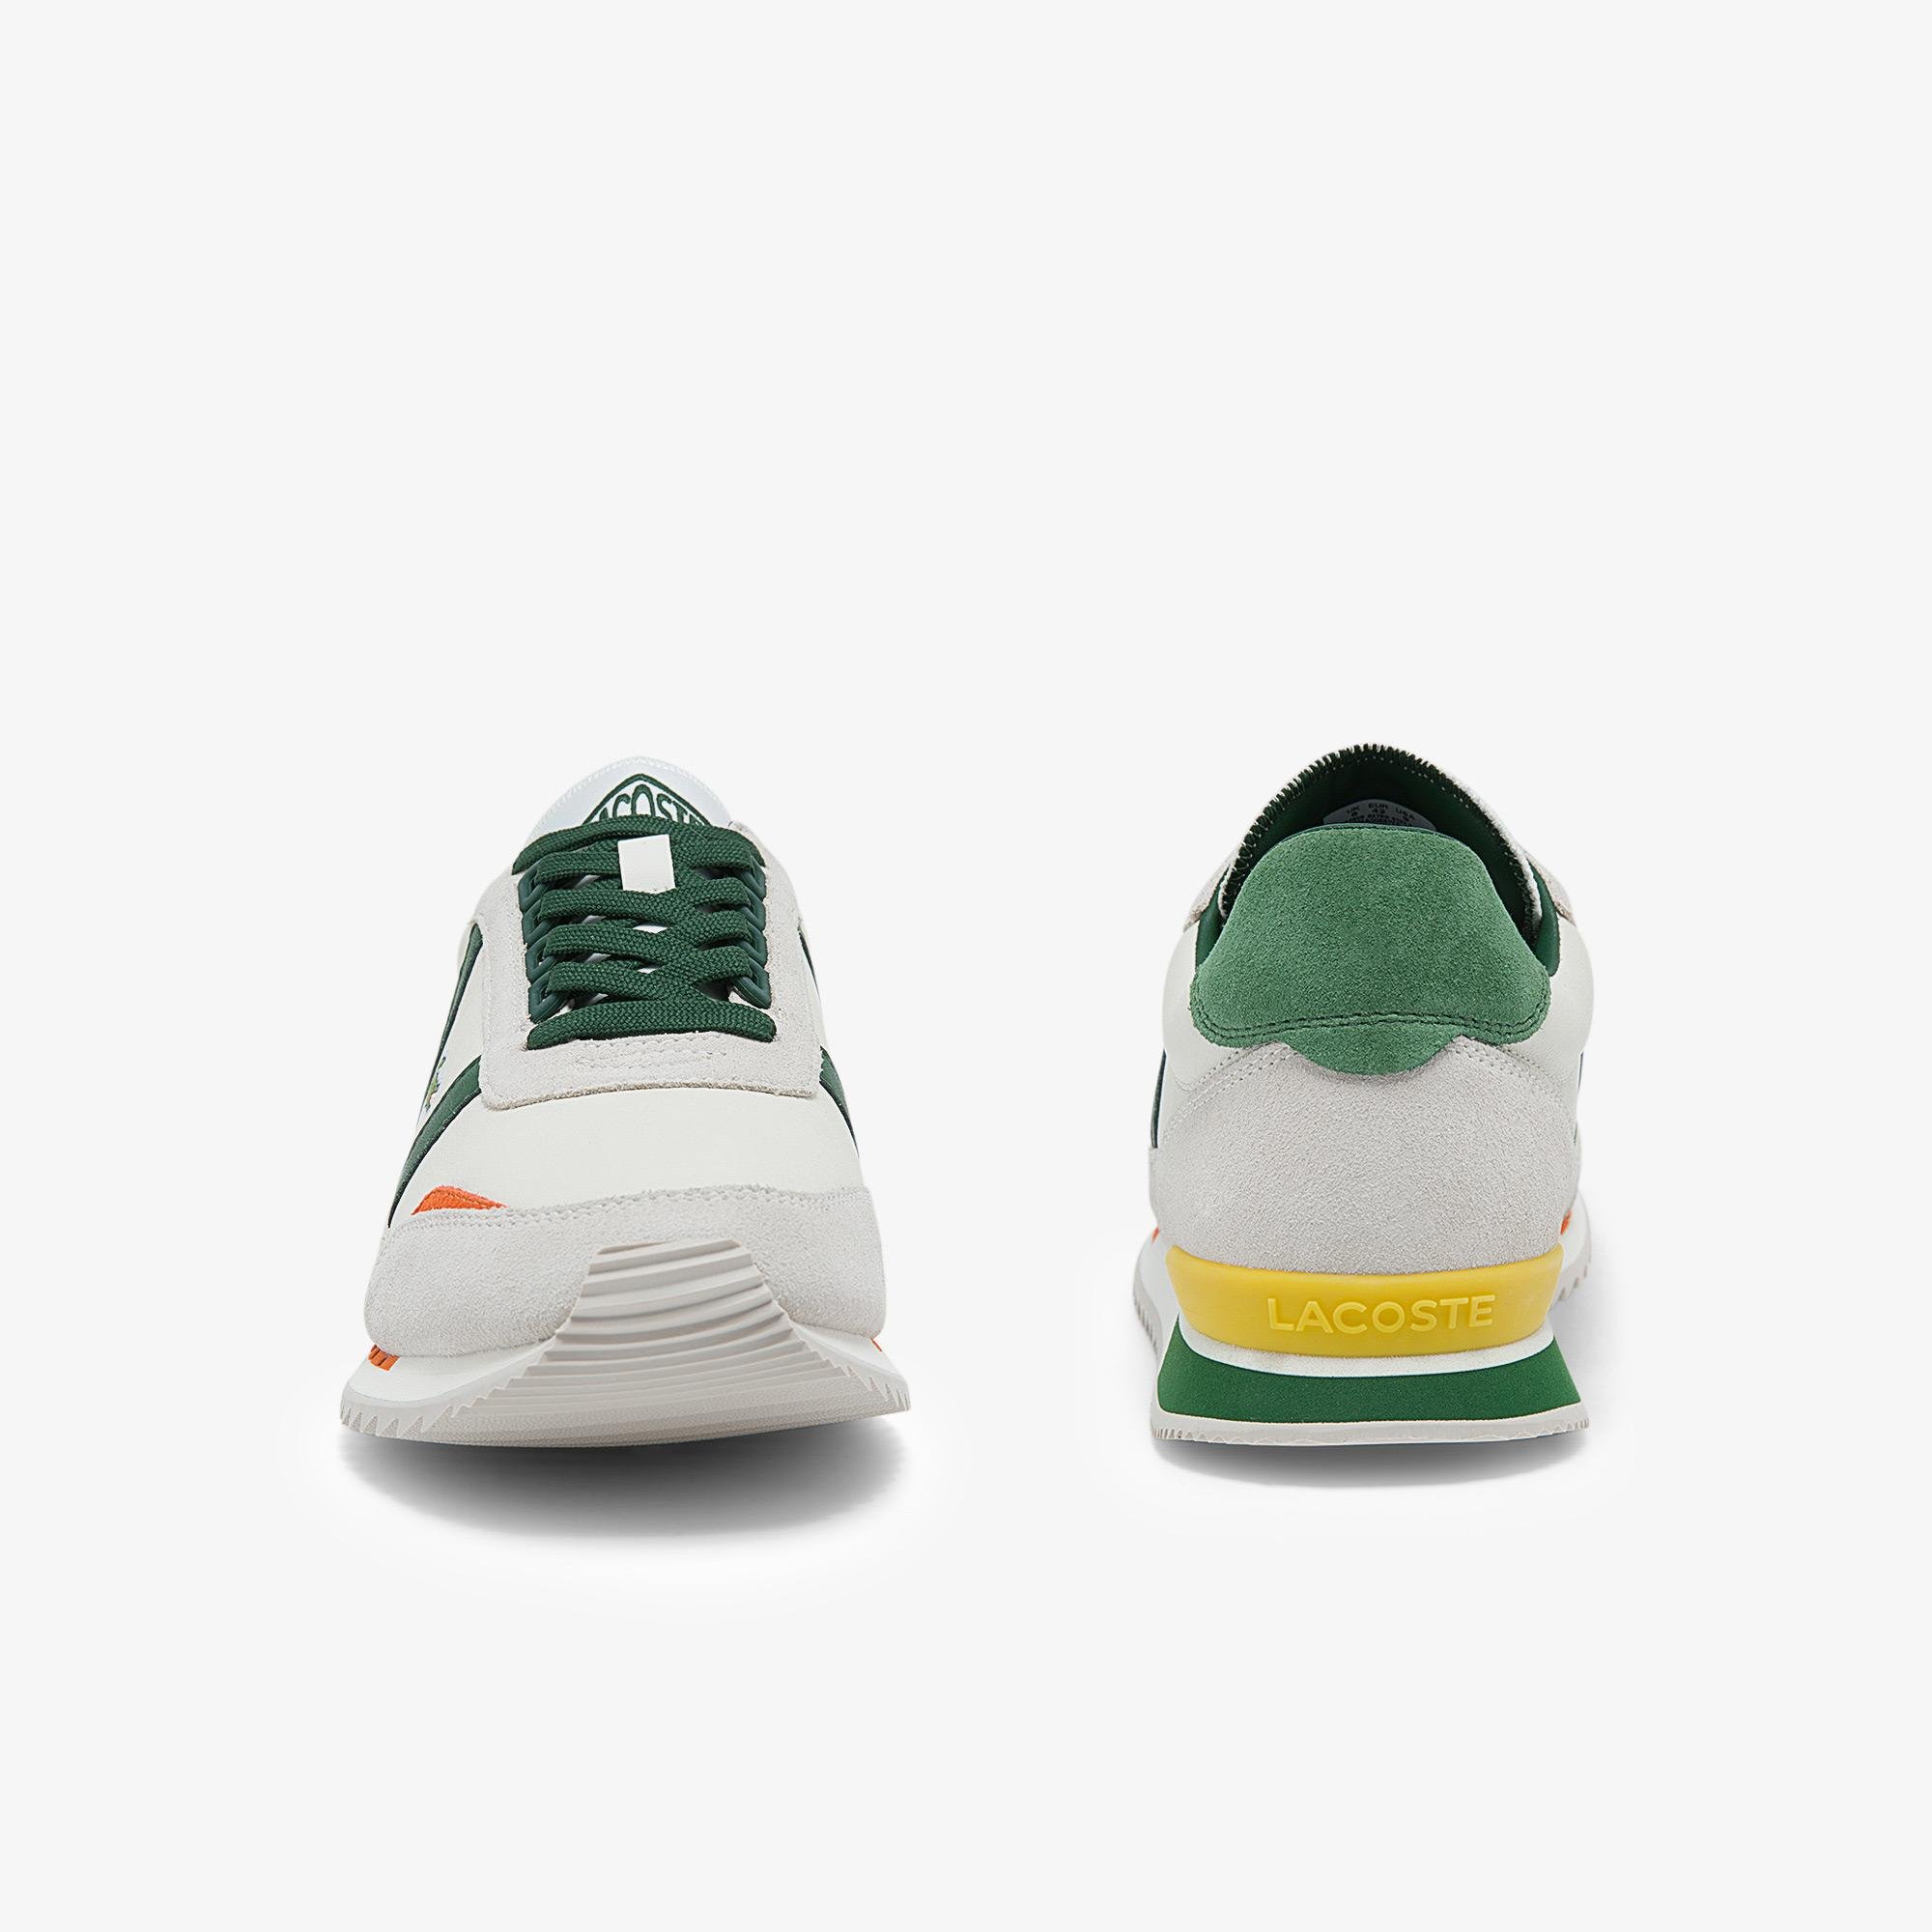 Lacoste Partner Retro 0121 3 Sma Erkek Deri Beyaz - Yeşil Sneaker